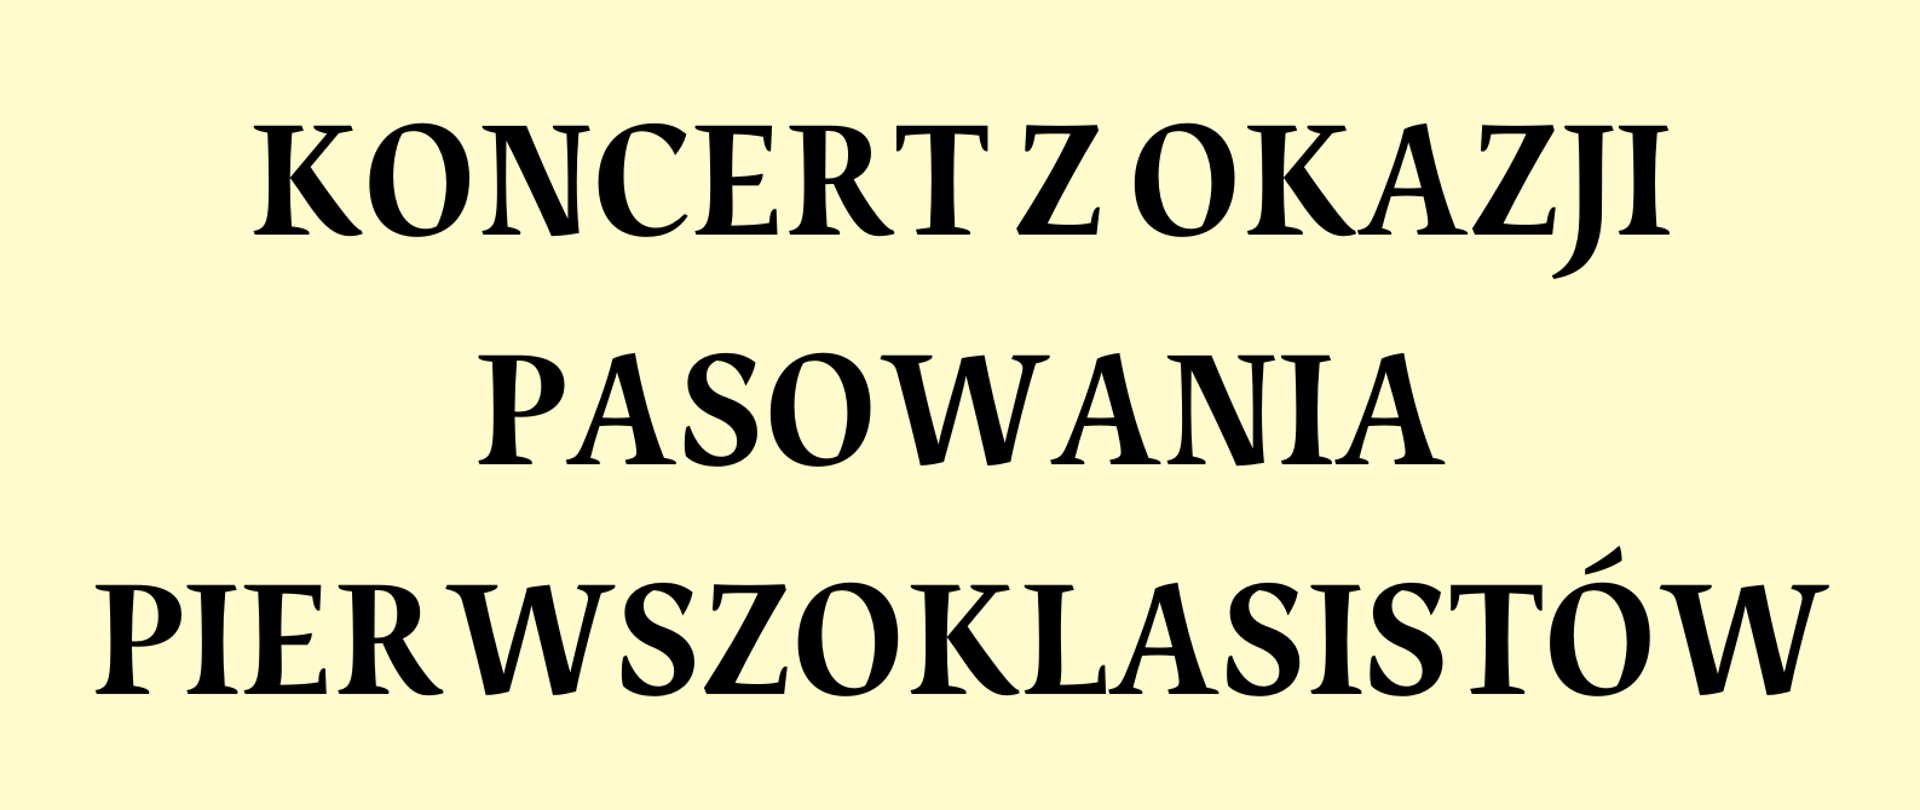 Plakat zaprasza na koncert z okazji pasowania pierwszoklasistów szkoły. W prawym górnym rogu znajduje się logo PSM I st. w Szczytnie. Plakat ozdobiony jest instrumentami na kolorowym tle.